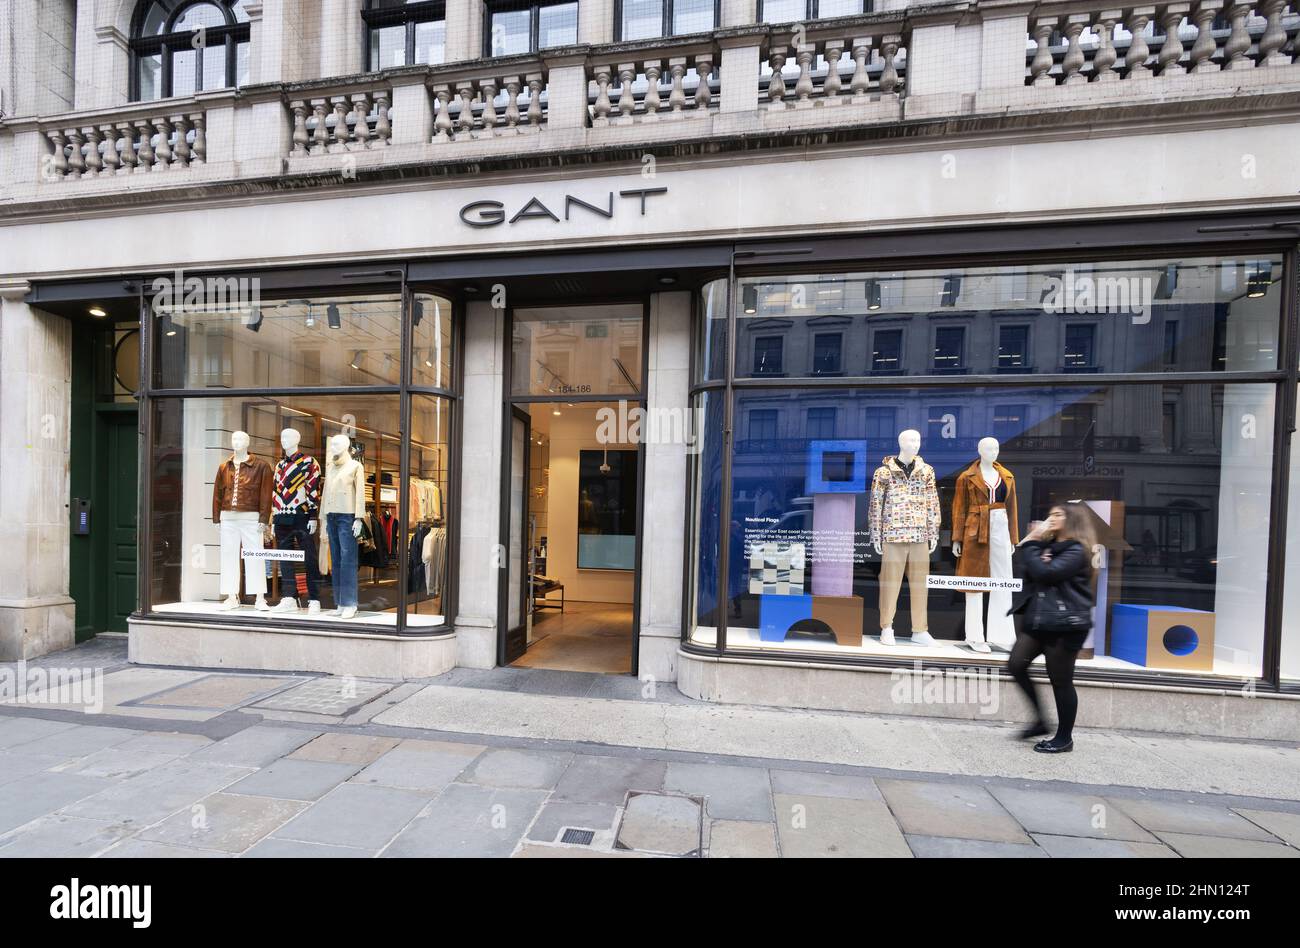 hará fama Mucho bien bueno Gant STORE LONDRES - El exterior de la tienda Gant - marca de ropa Gant;  Regent Street, Londres, Reino Unido Fotografía de stock - Alamy